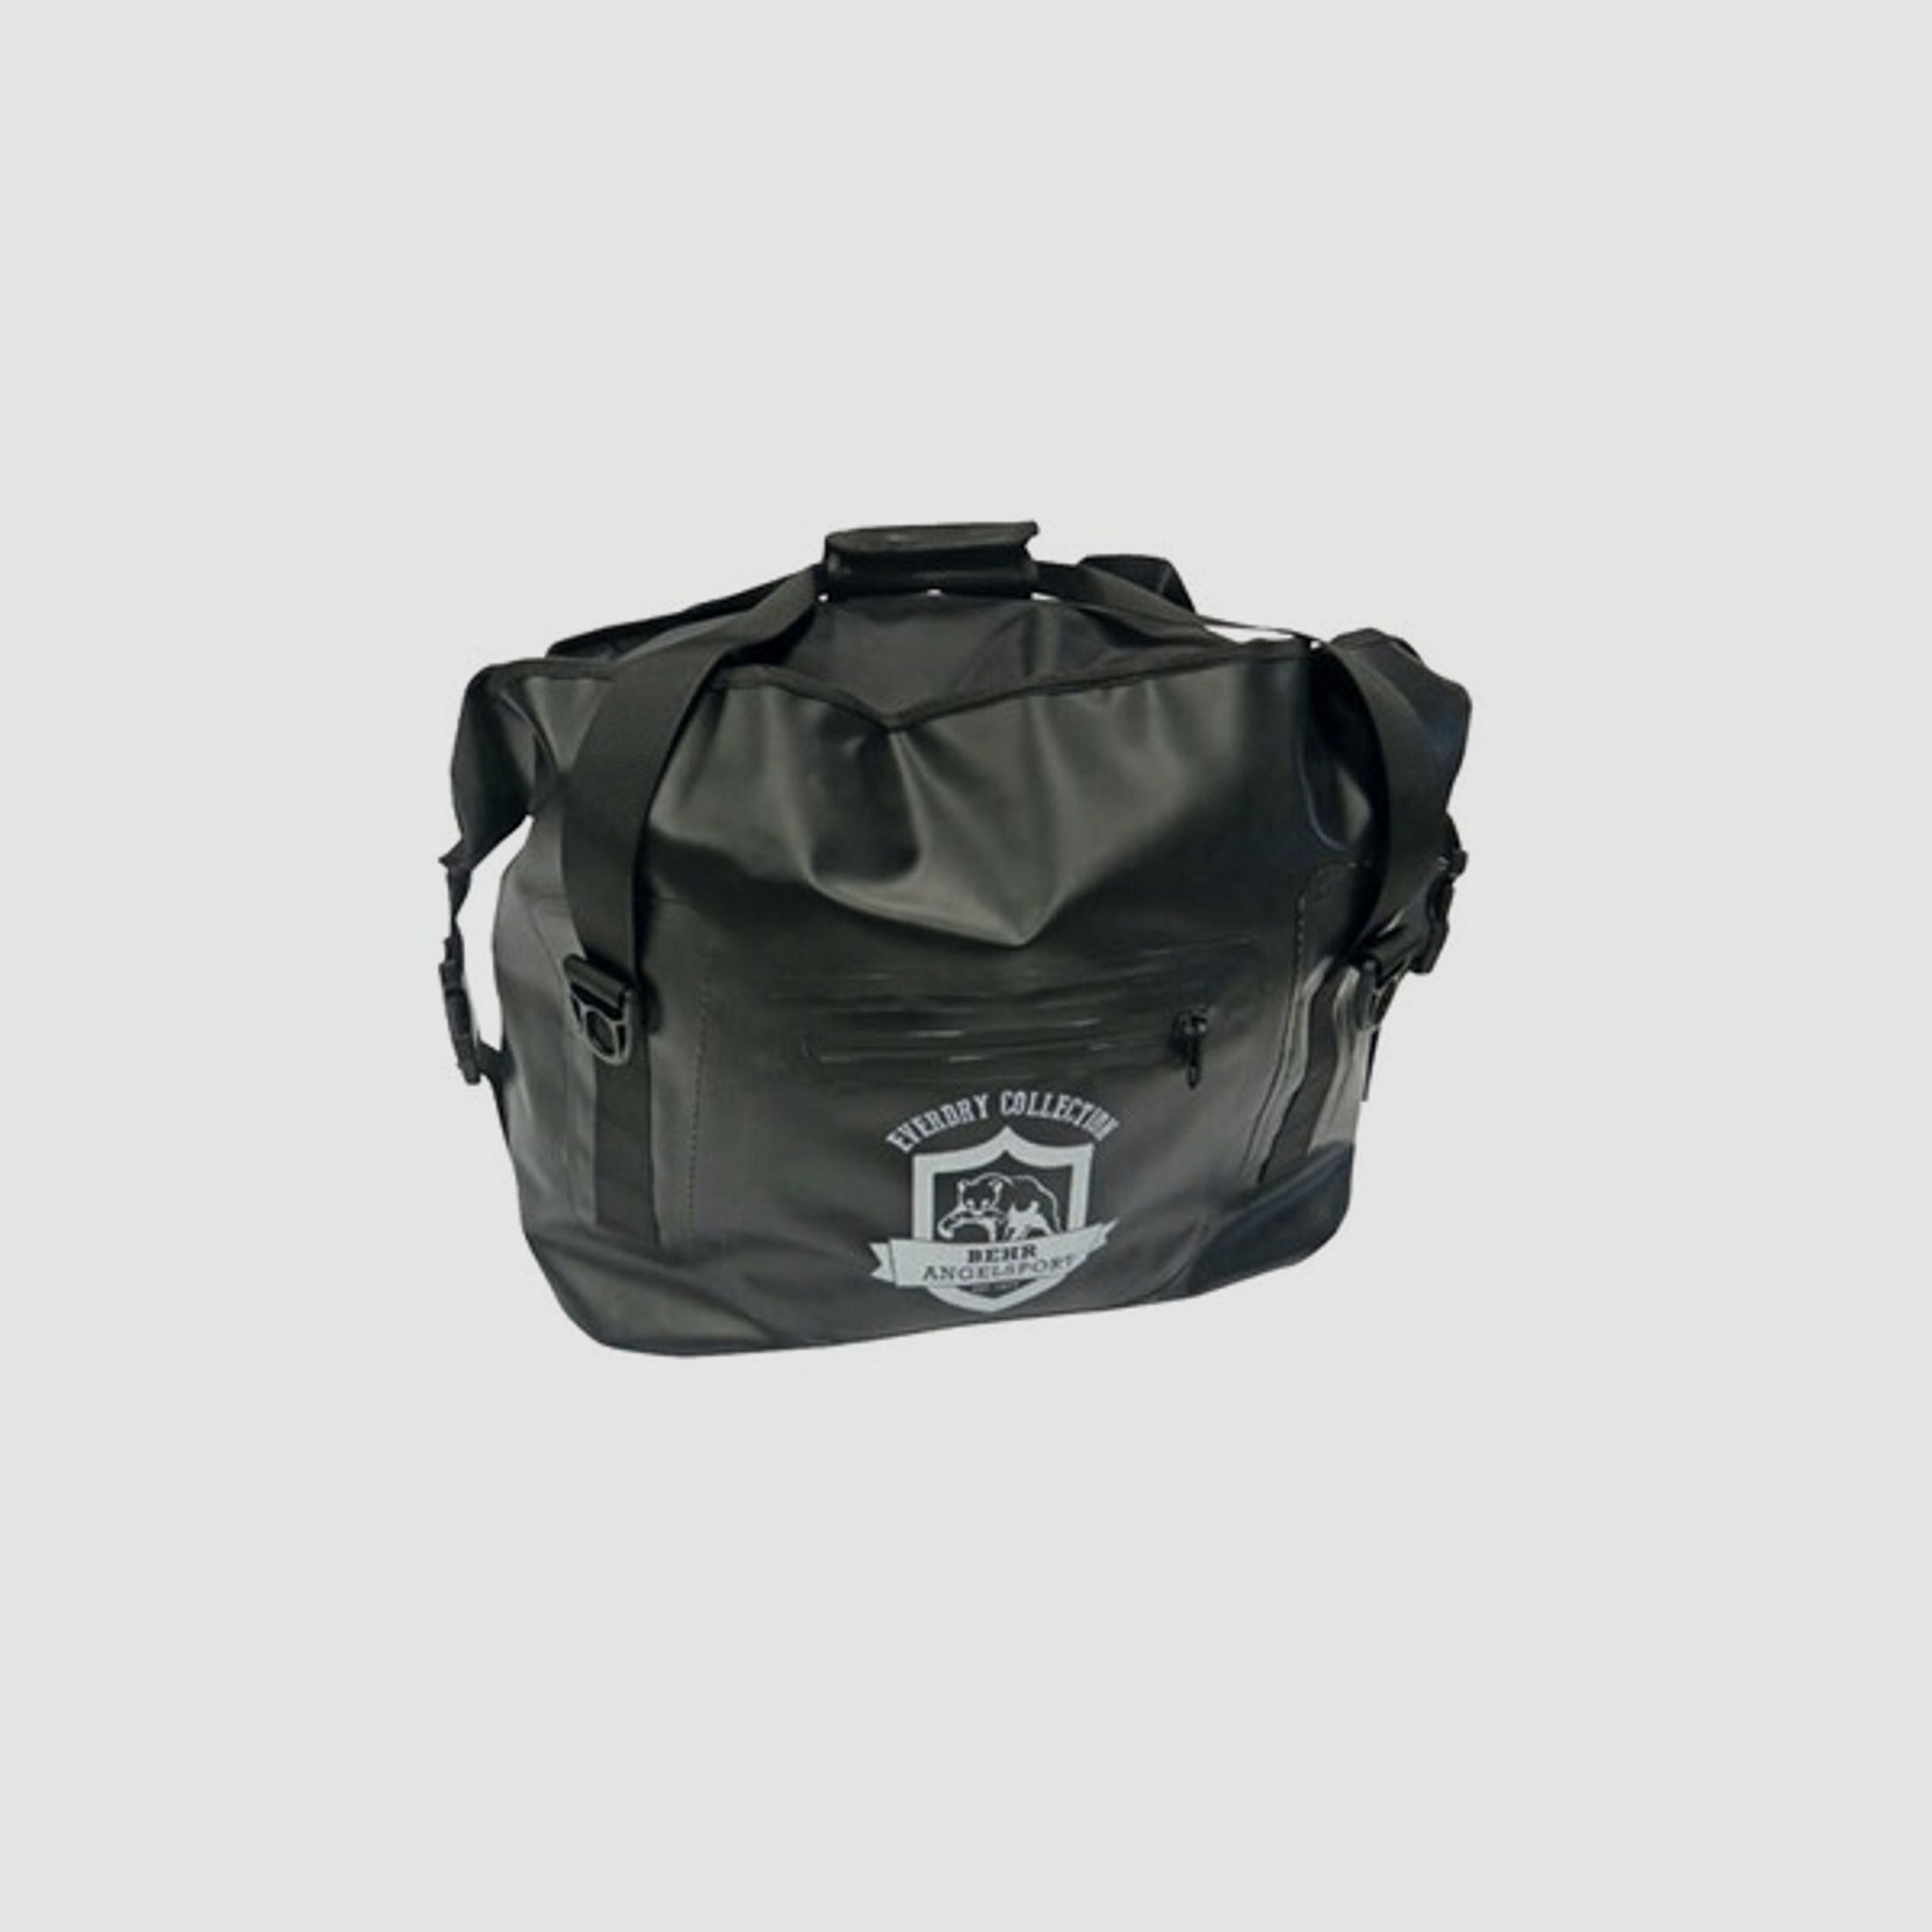 Behr Carry All Gear Bag - wasserdichte Umhängetasche - Salzwasser geeignet - 40 Liter - Schwarz